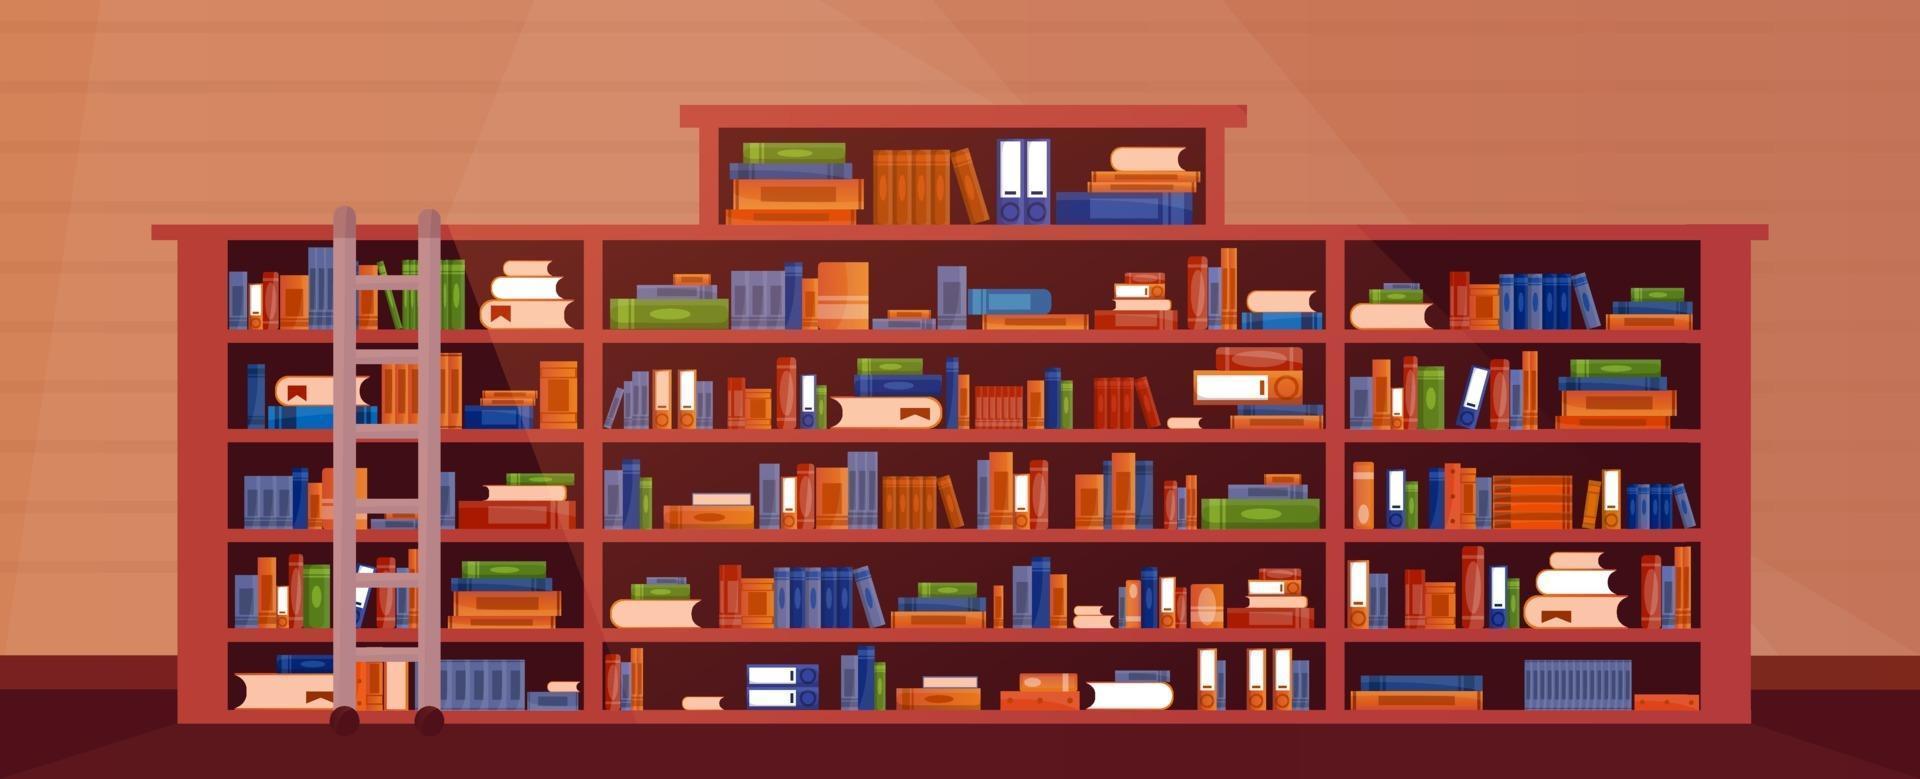 großes Bücherregal mit Büchern mit Treppe, Leiter. Bibliothek Bücherregal Interieur. Bücher und Wissen. vektor